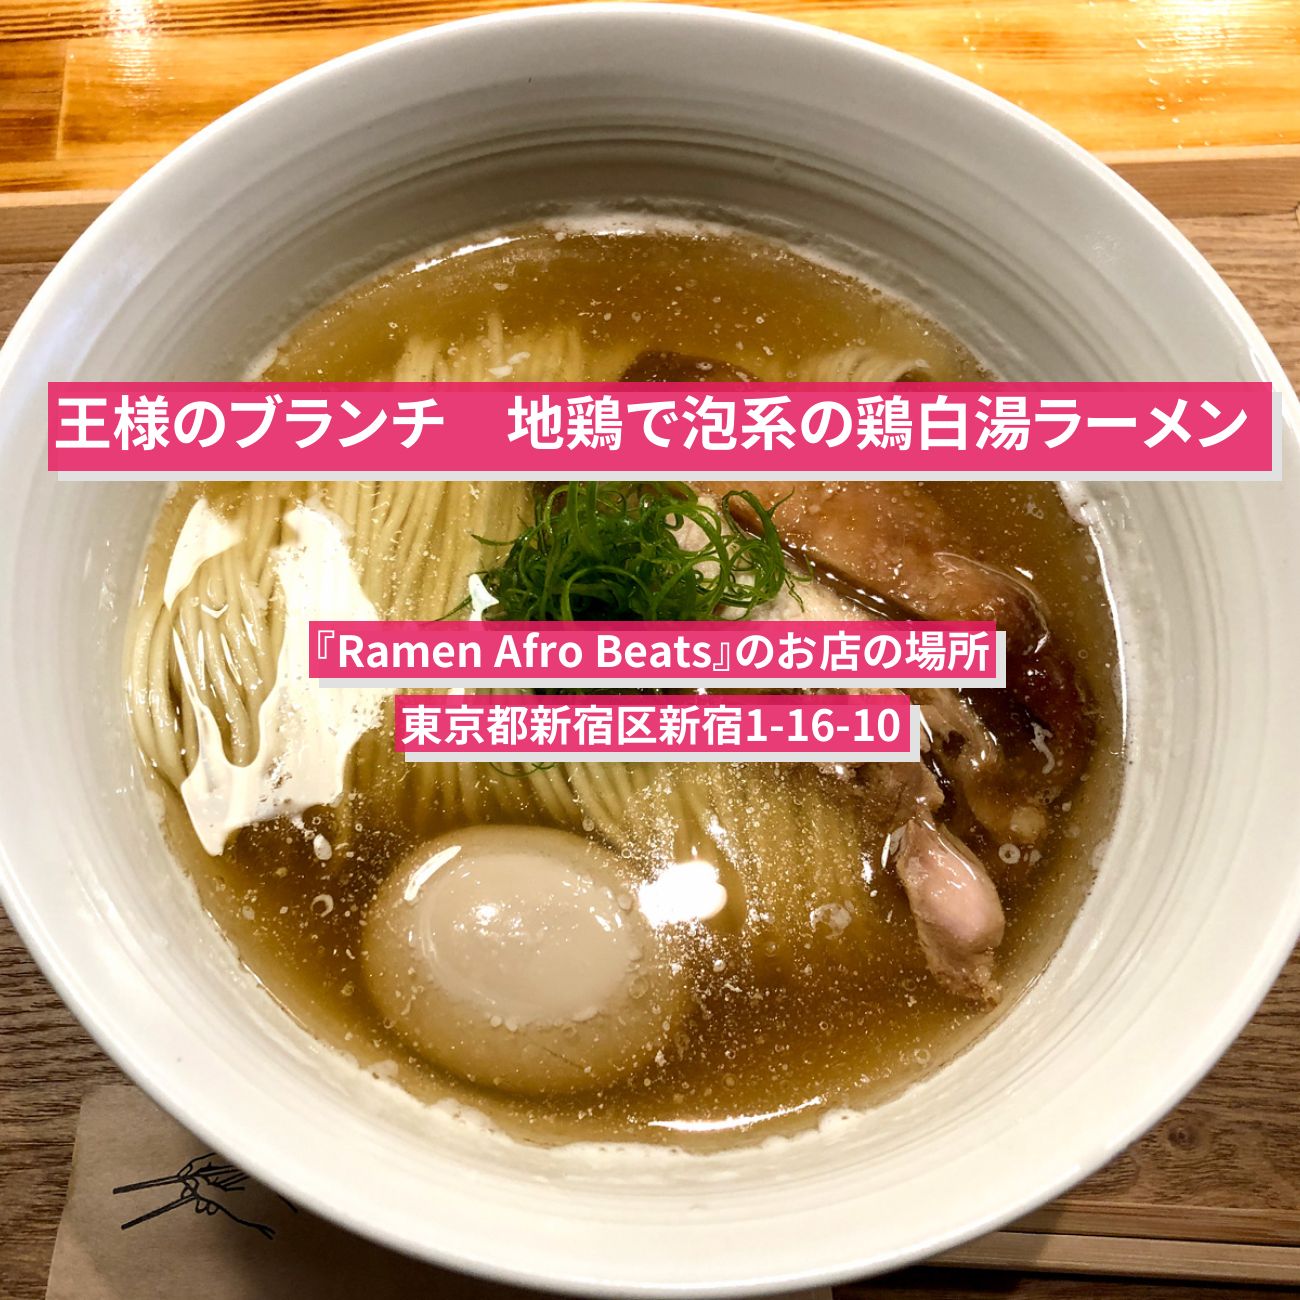 【王様のブランチ】地鶏で泡系の鶏白湯ラーメン『Ramen Afro Beats』新宿のお店の場所